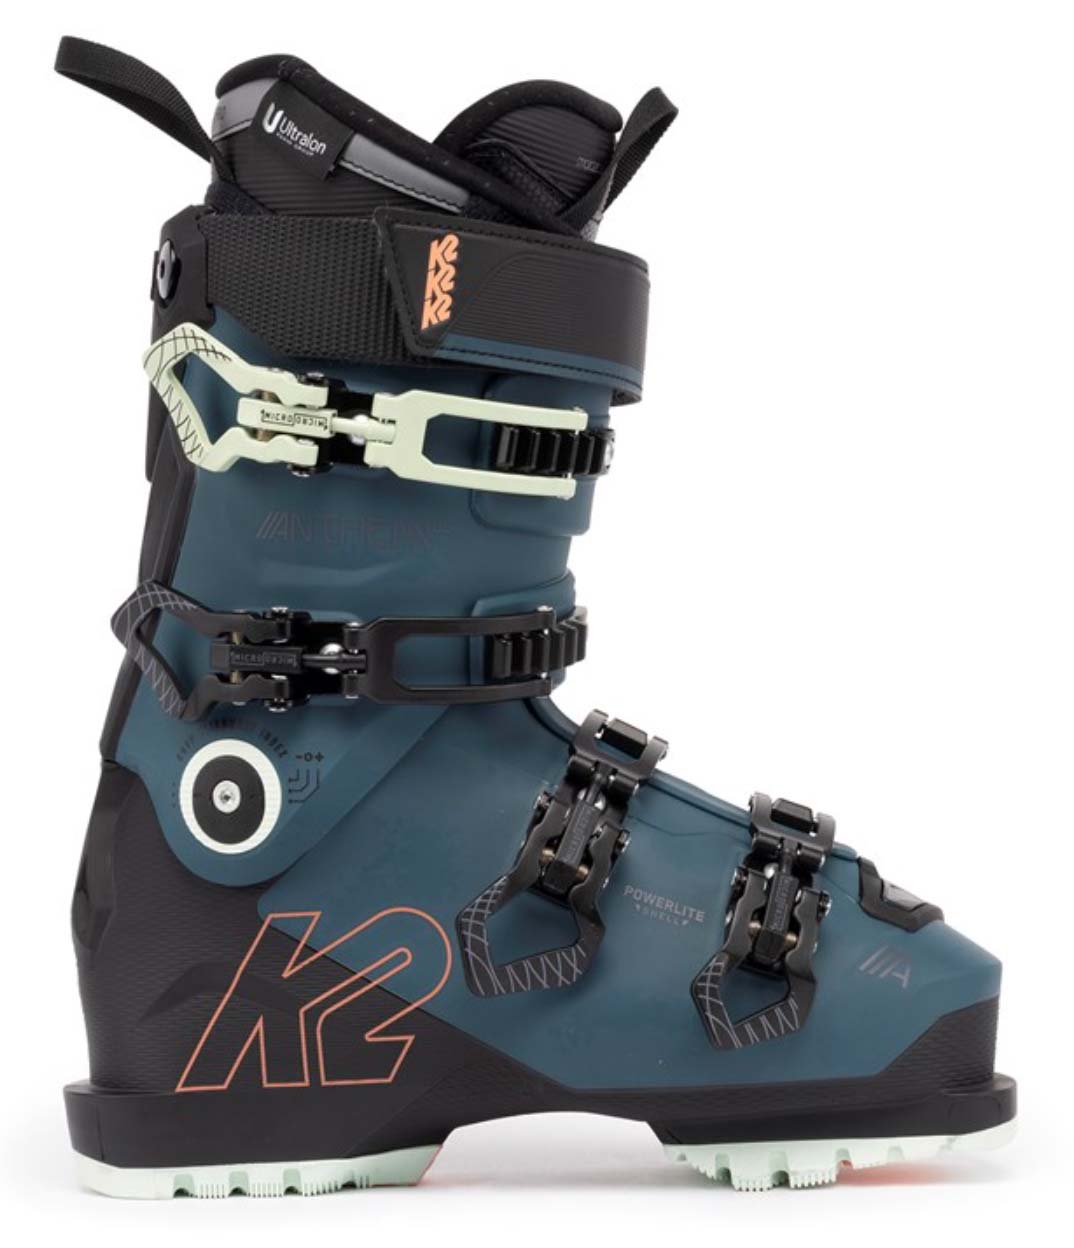 K2 Anthem 105 MV women's ski boot